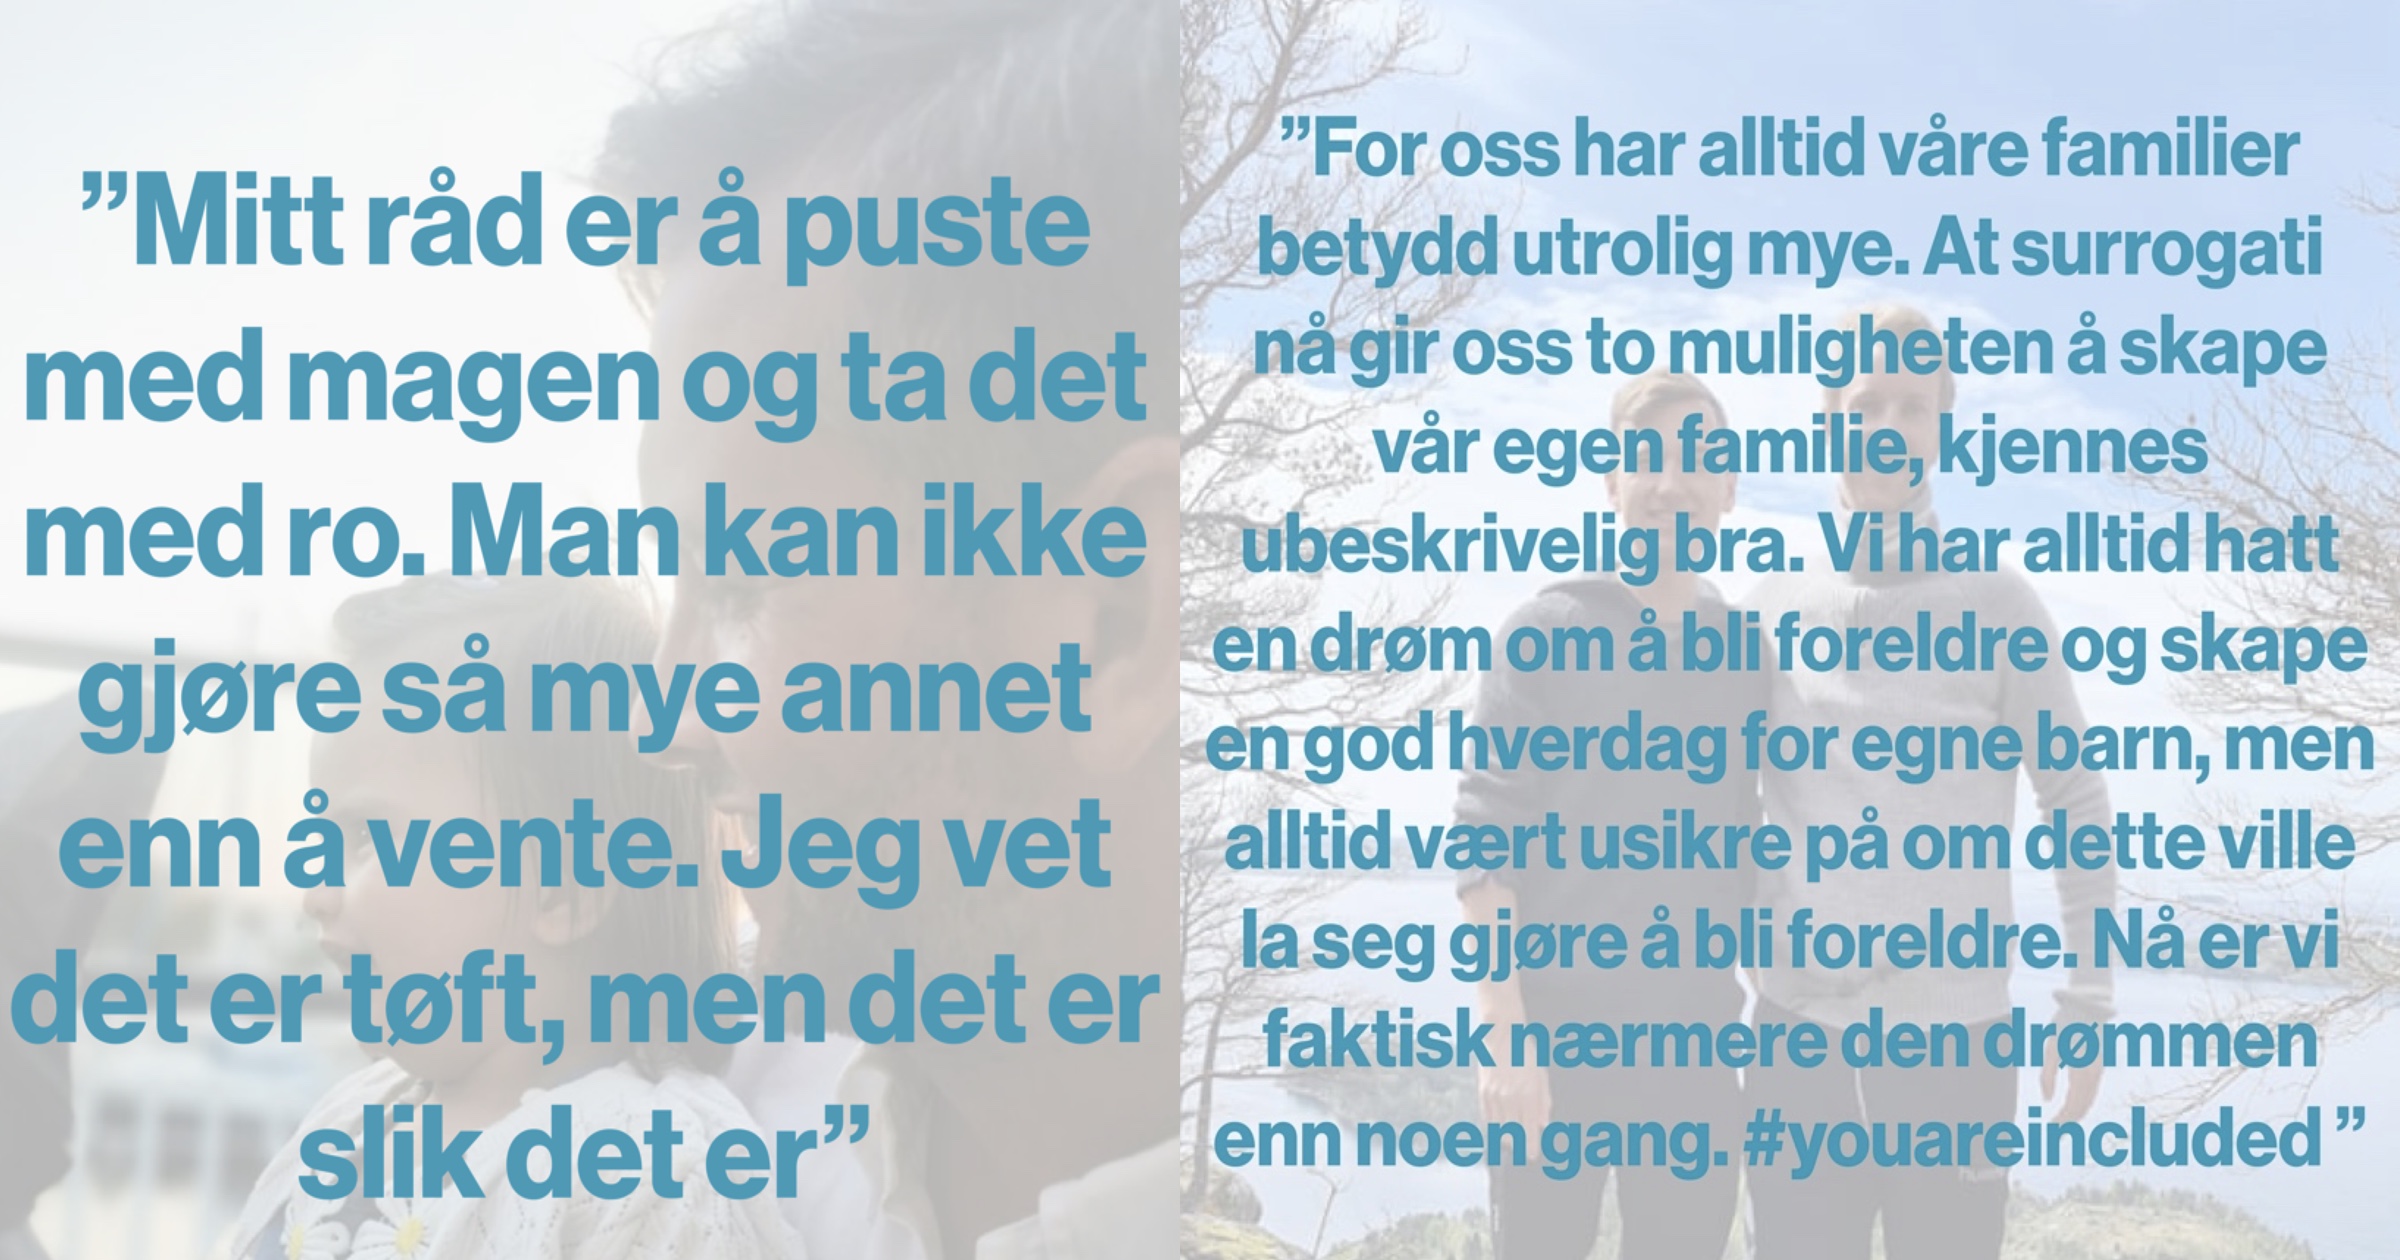 NyhetsArtikel aret2 Nordic Surrogacy